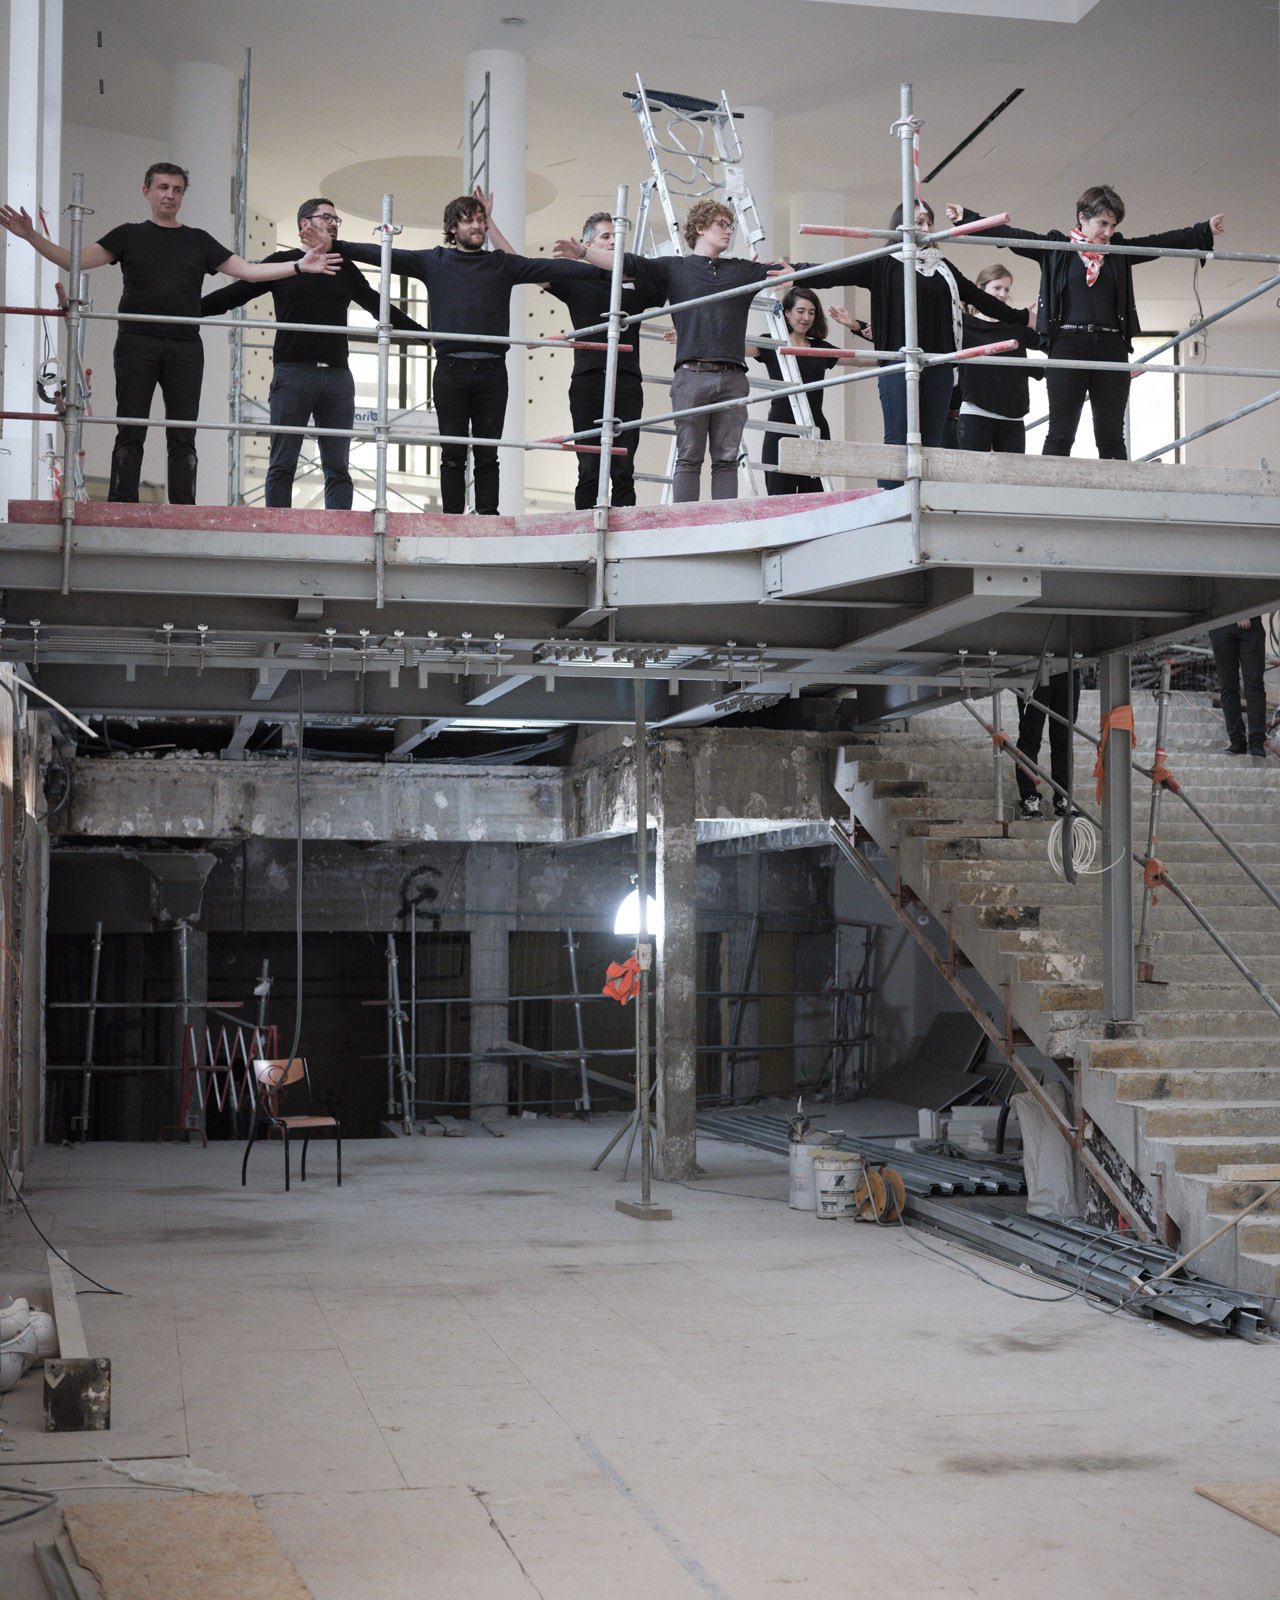 Le MAM en chantier 20 mai 2019
Avec la chorégraphe Annick Charlot et ses danseurs et les architectes d'H2o.